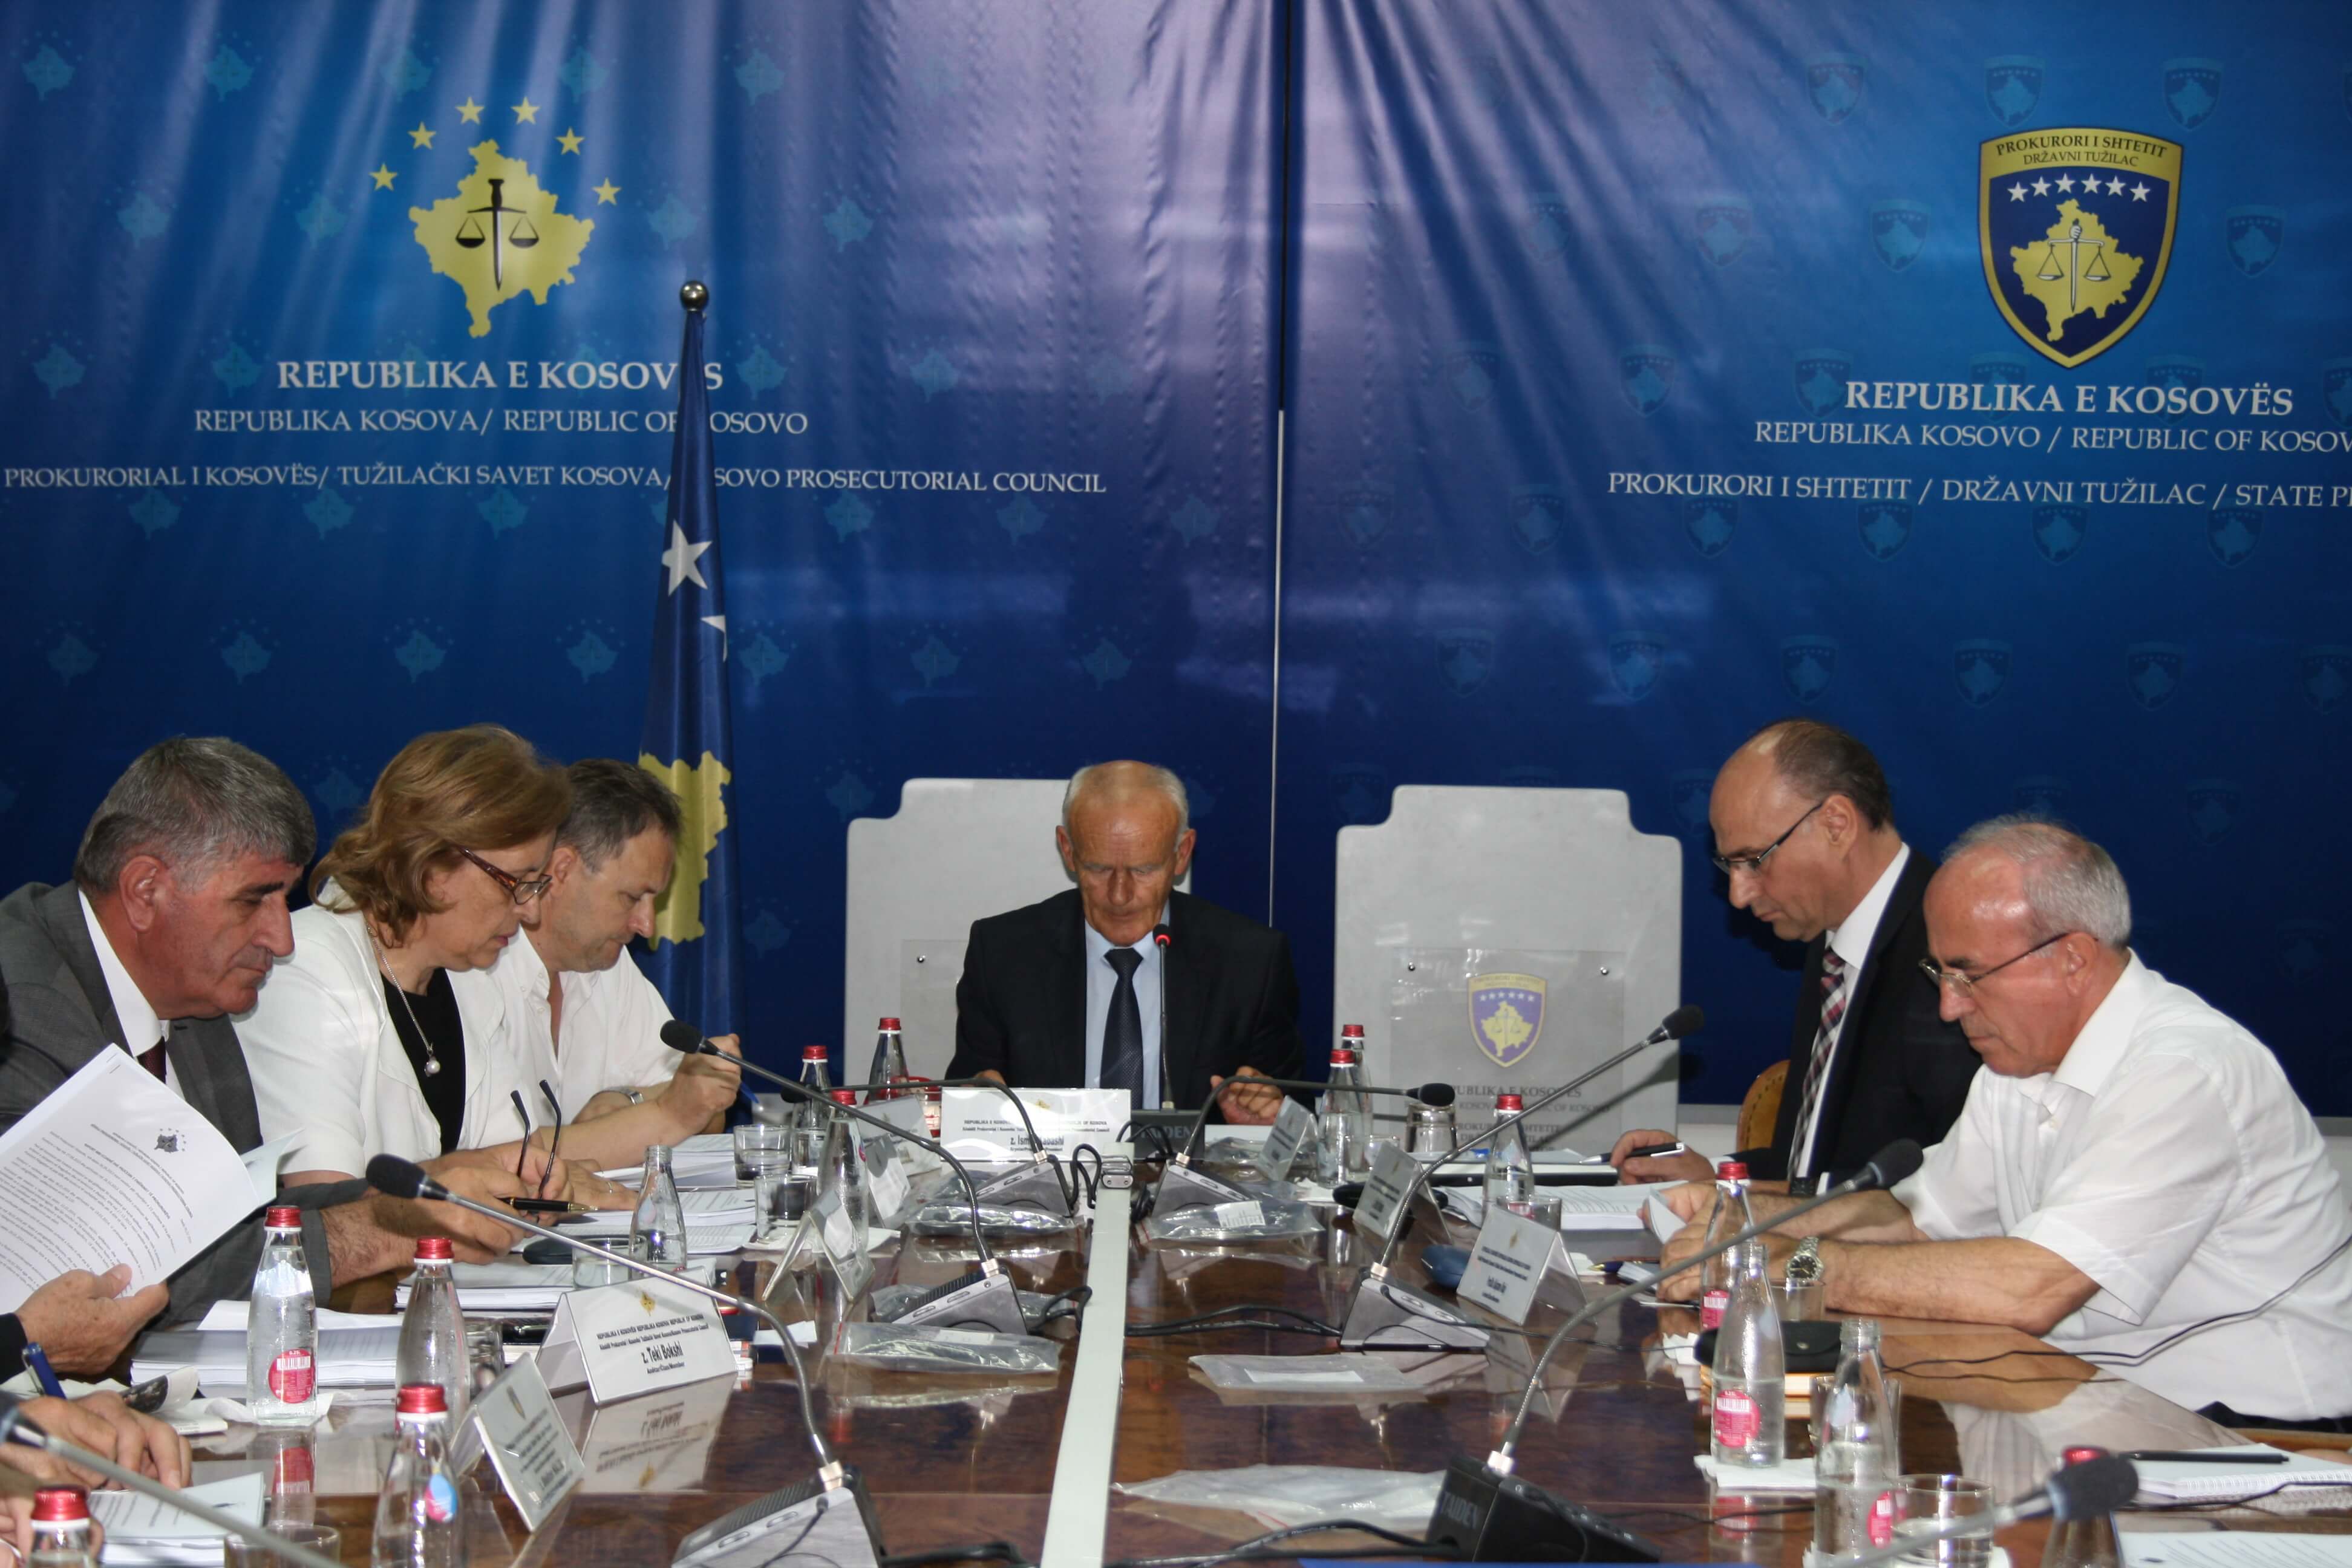 MBAHET TAKIMI I RADHËS I KËSHILLIT PROKURORIAL TË KOSOVËS, 24 DHJETOR 2014